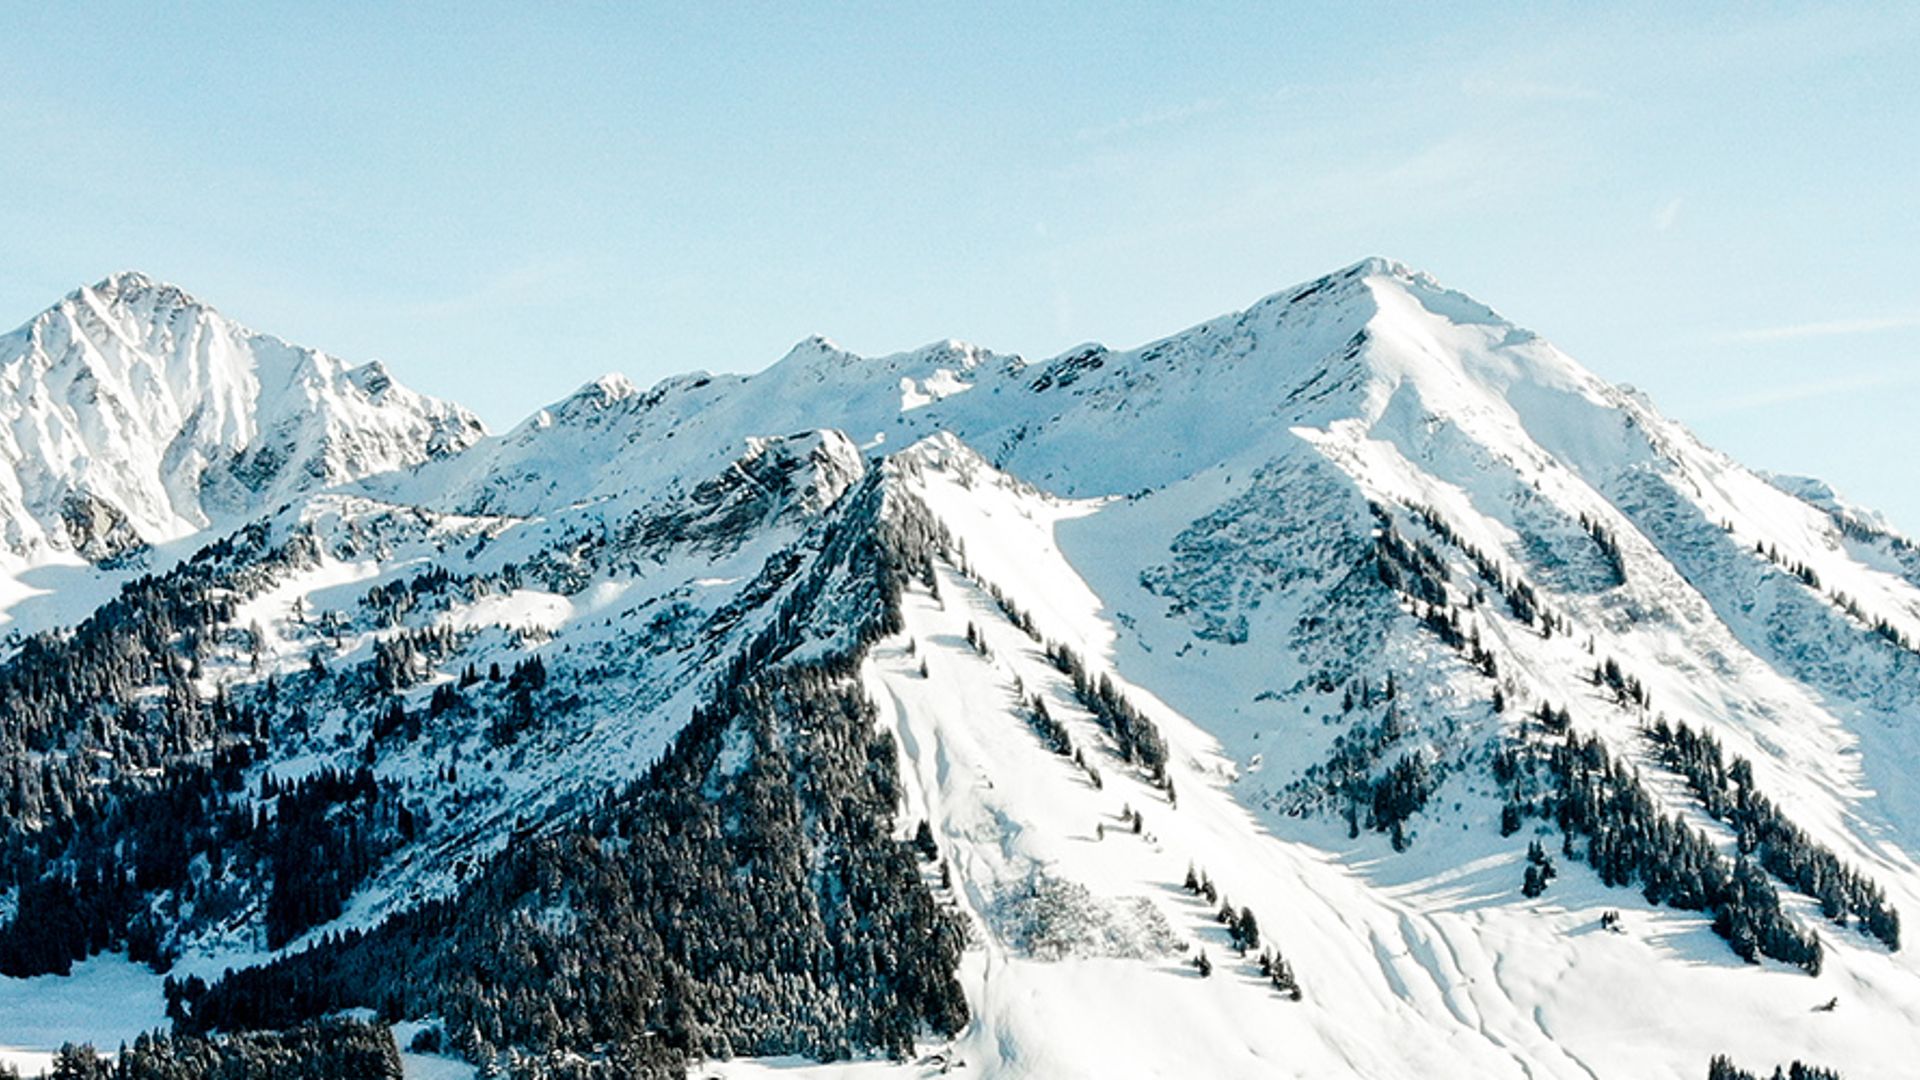 Pistes de ski vers l'Arsat sur le domaine skiable des Mosses-La Lécherette - Hiver - Les Mosses